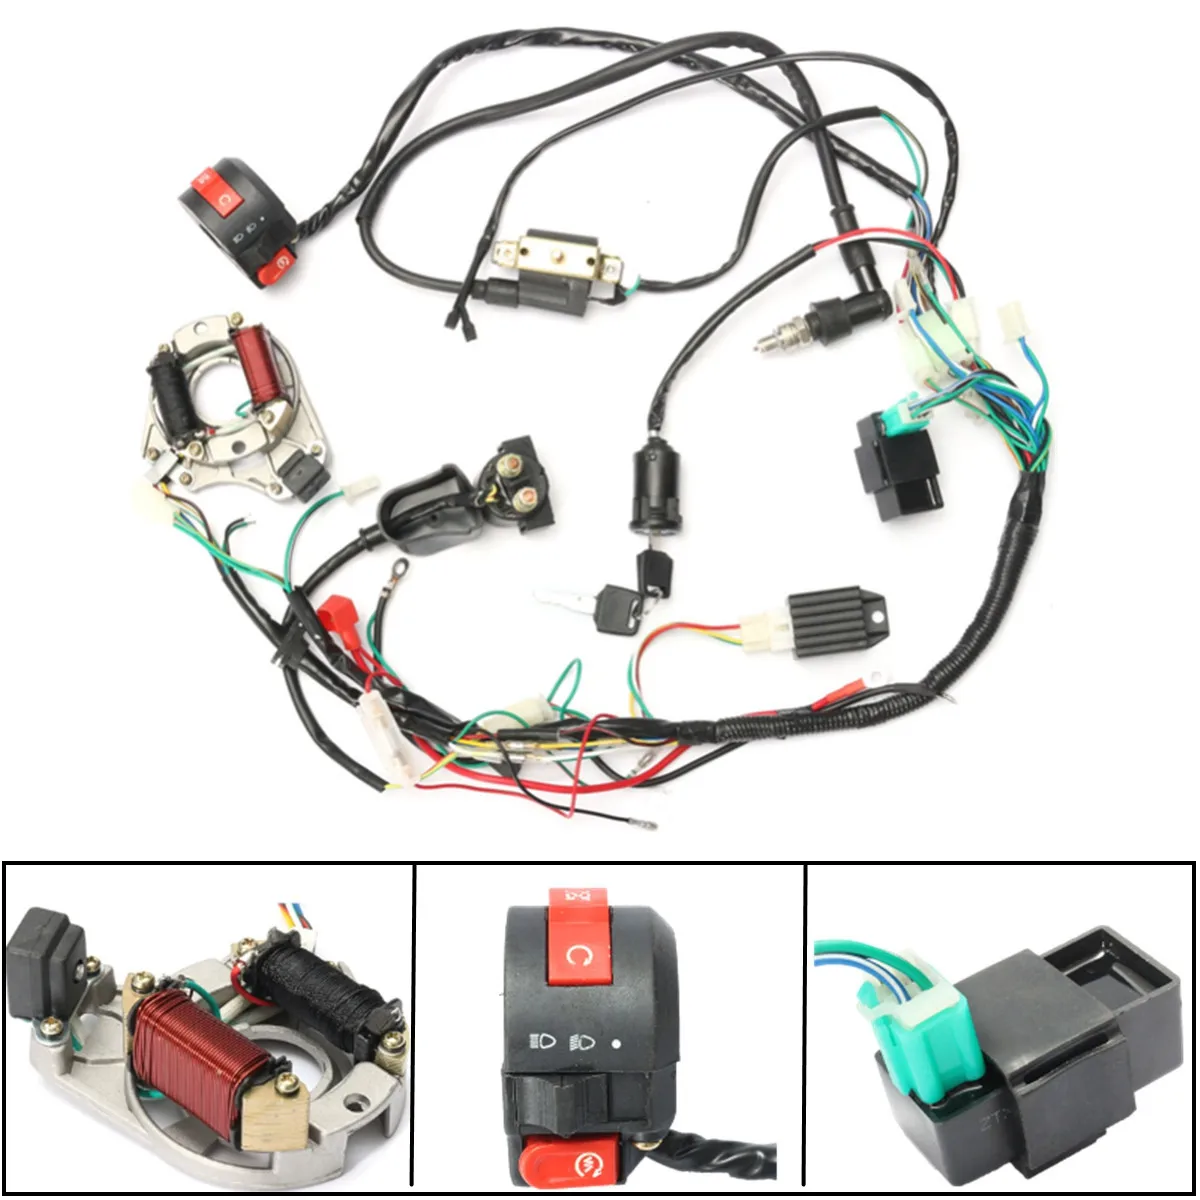 

Катушка зажигания CDI, жгут проводов, статор, сборка проводов для ATV Electric Quad 50CC 70CC 90CC 110CC 125CC